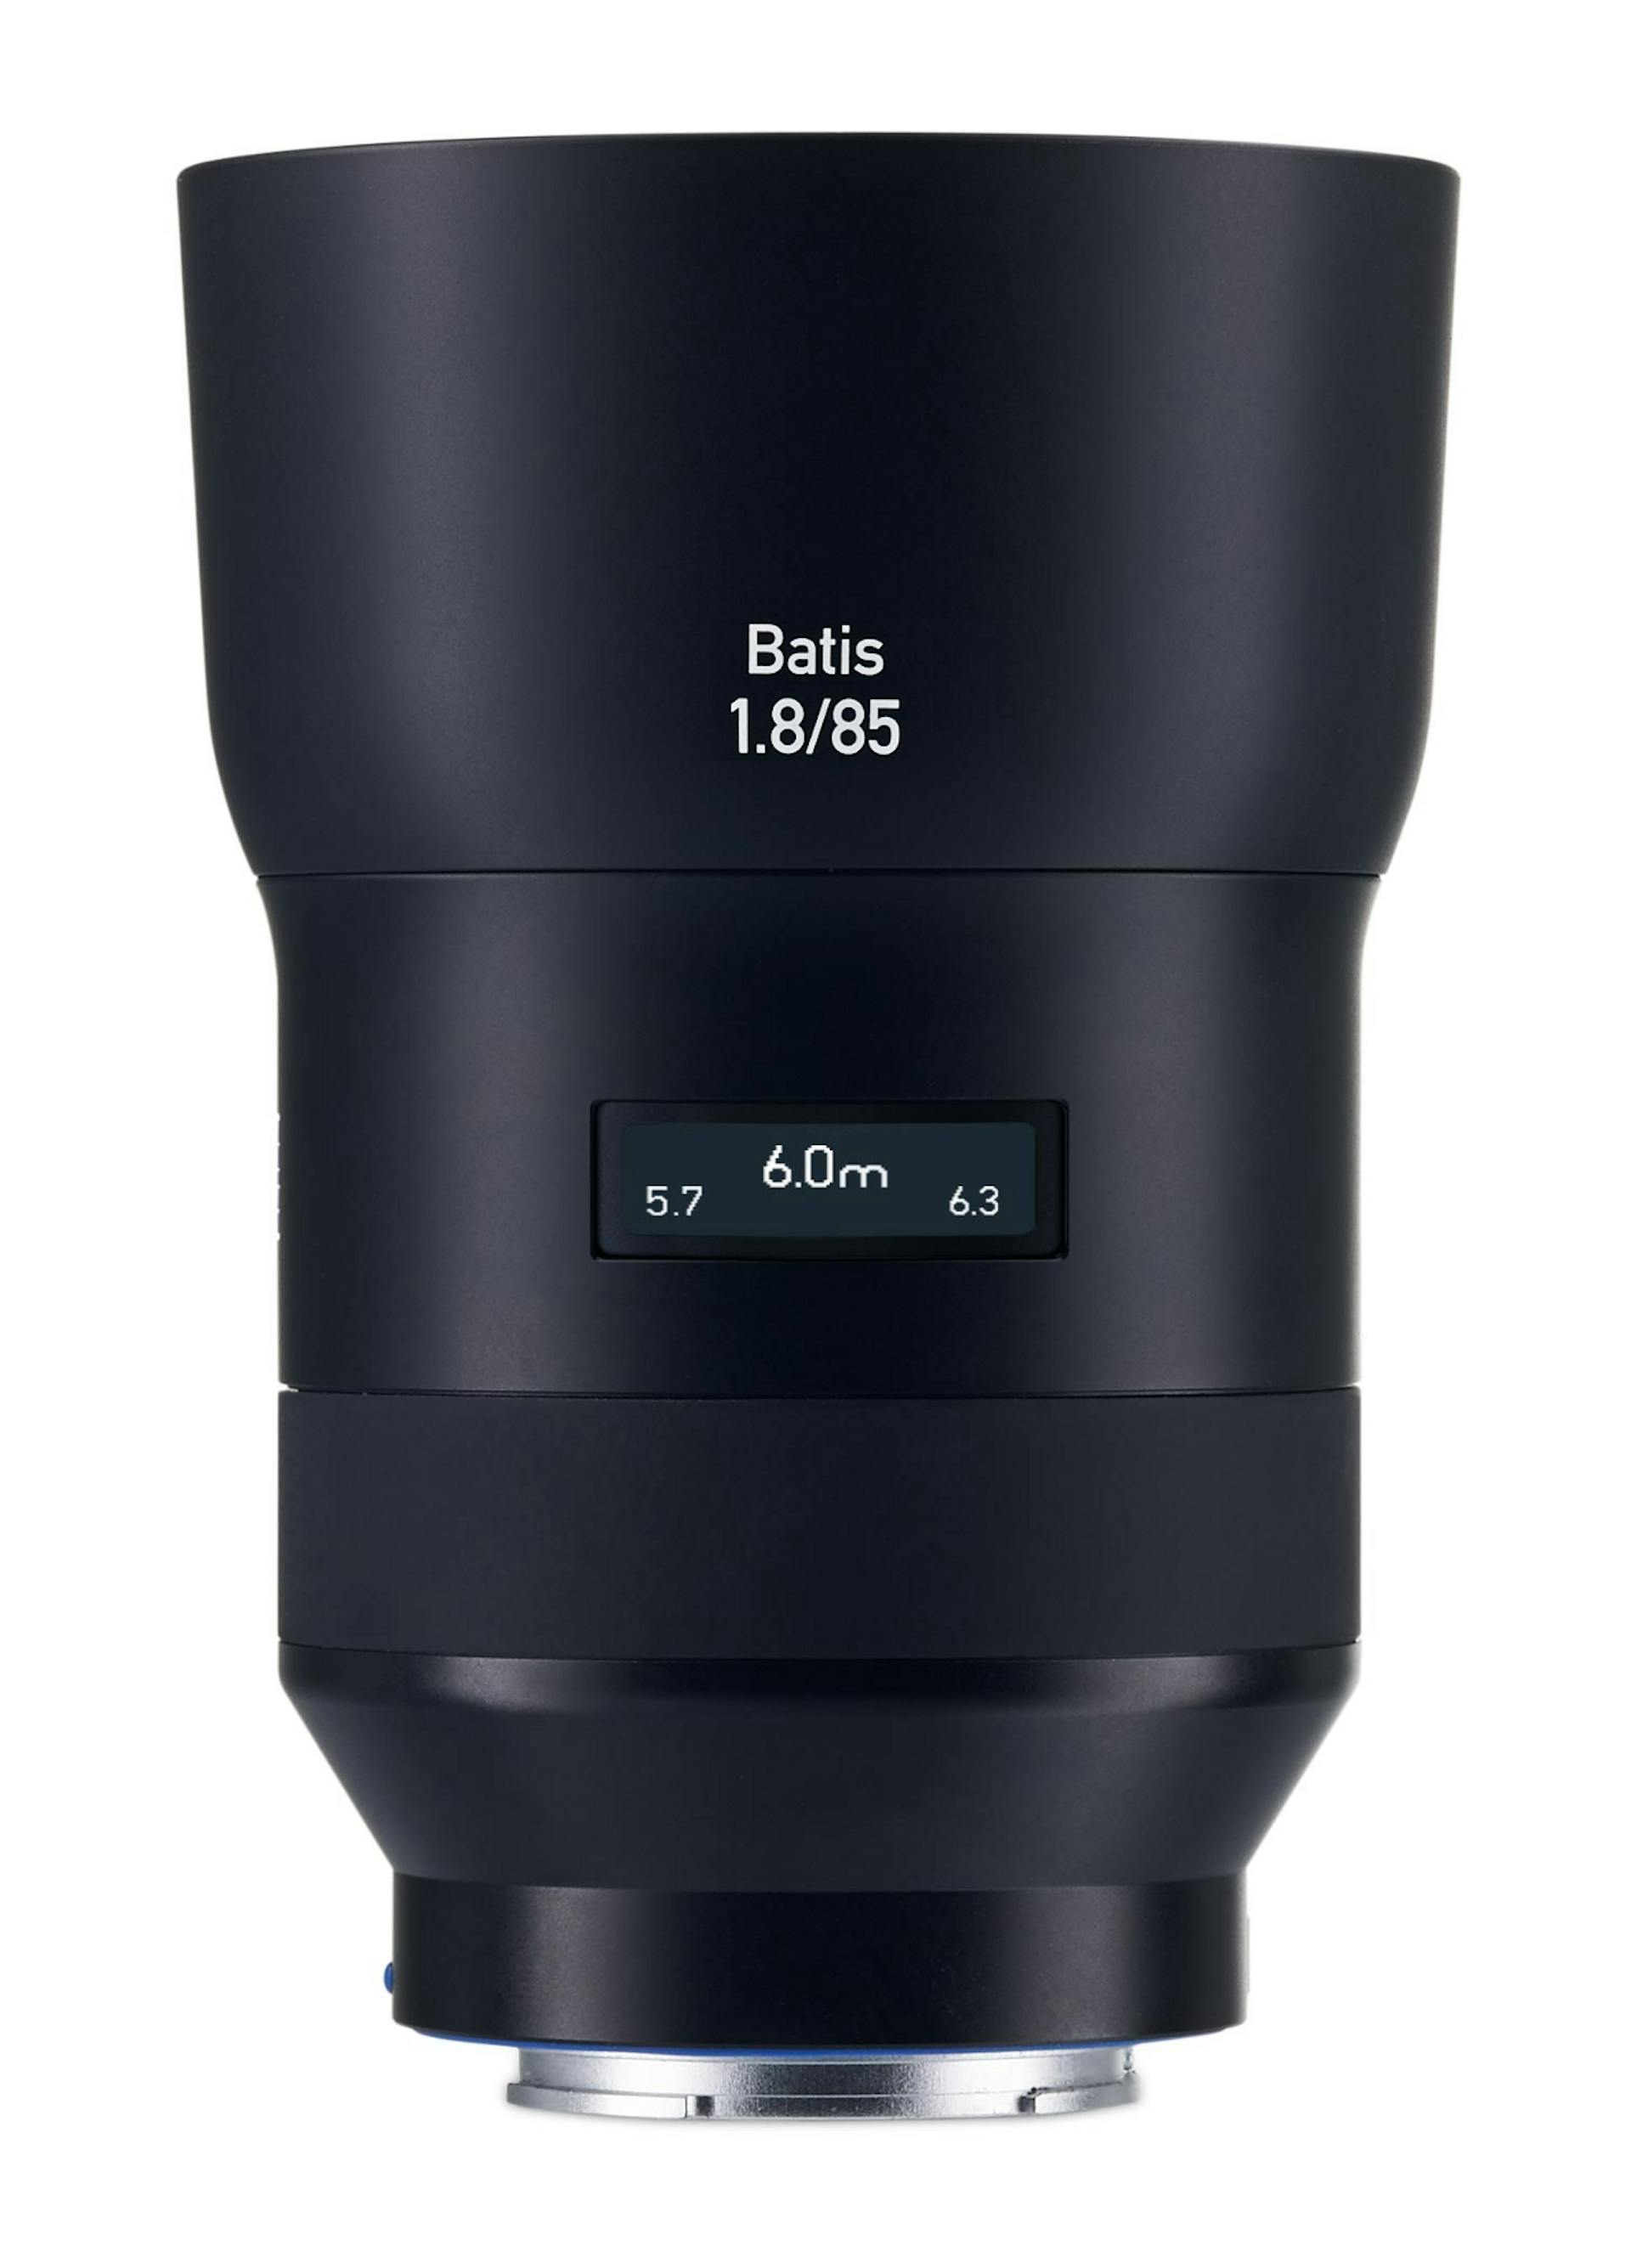 Mineraalwater Serie van Kindercentrum ZEISS Batis 1.8/85 | Fullframe autofocus lens for Sony α series